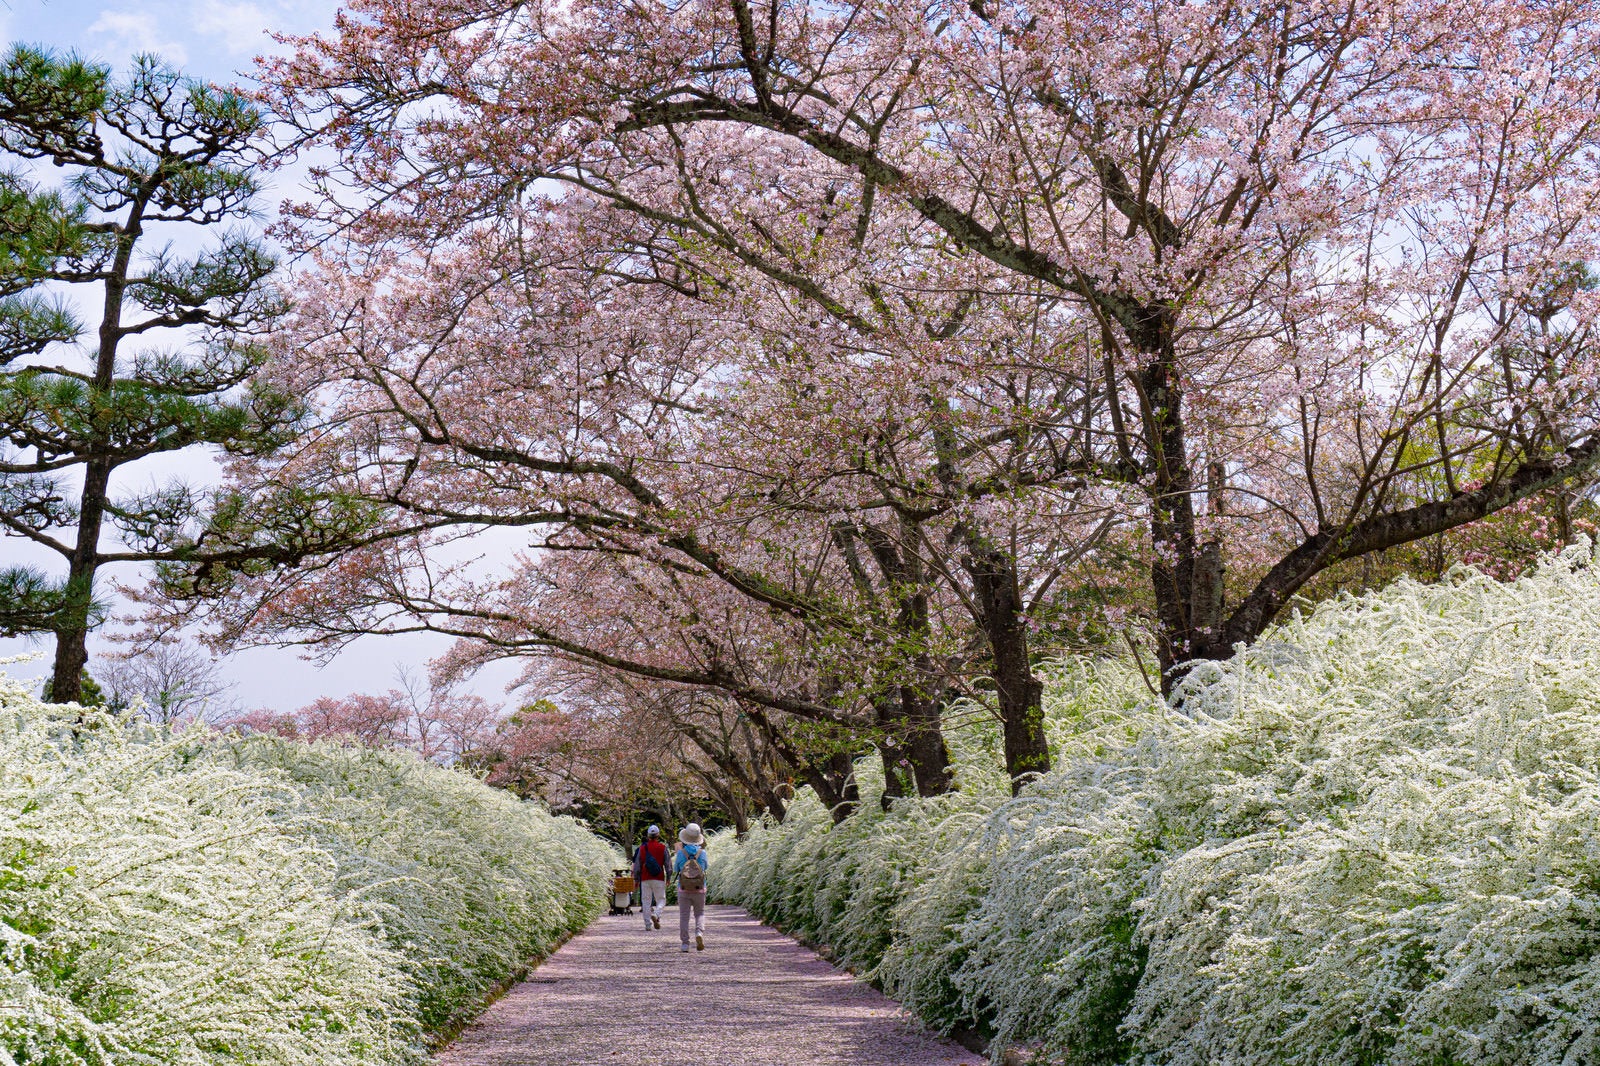 「ユキヤナギと桜に囲まれる小道」の写真